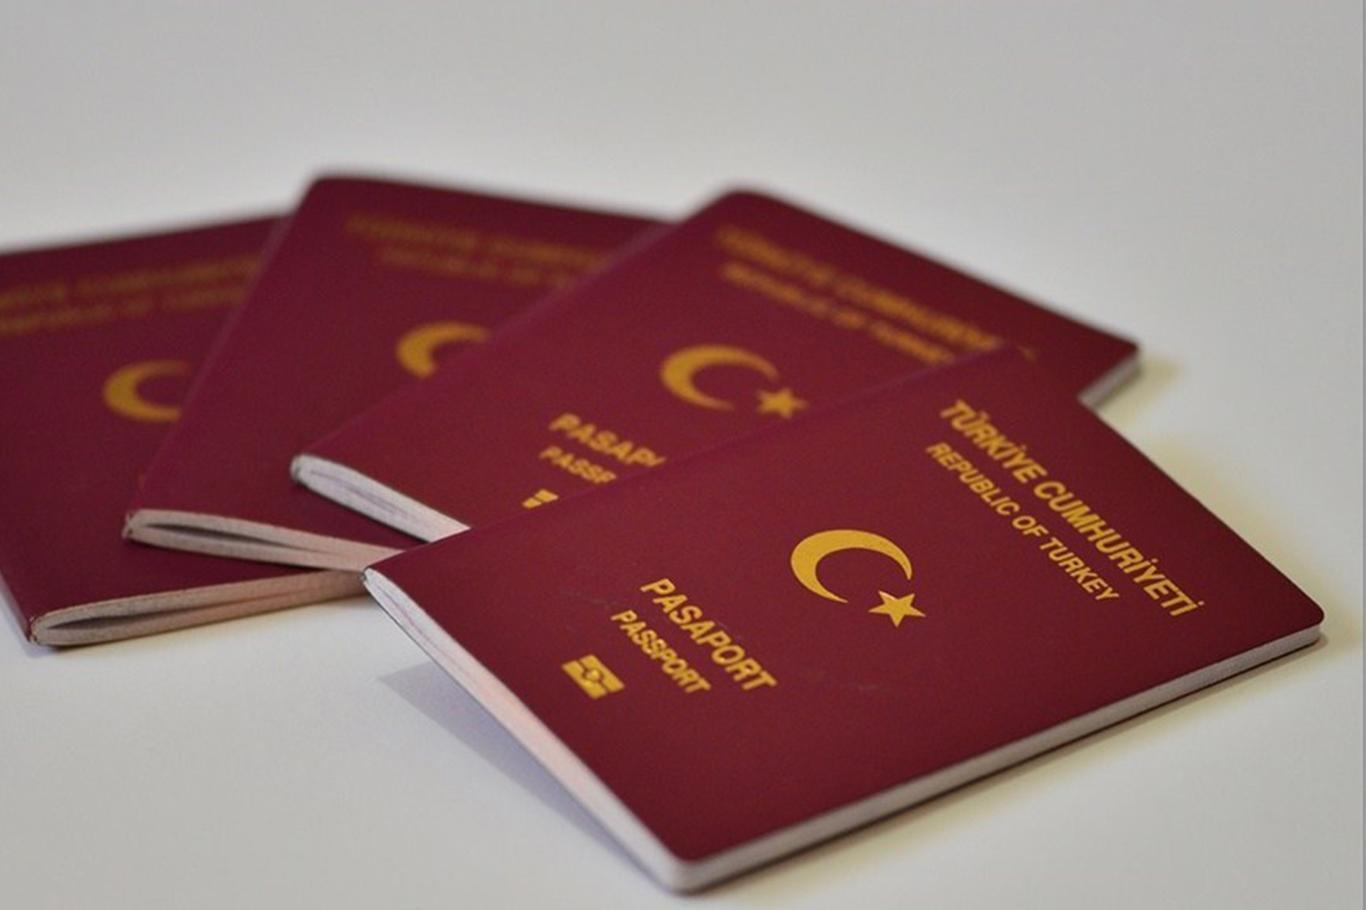 11 bin 27 kişinin pasaportundaki idari tedbir kararı kaldırıldı